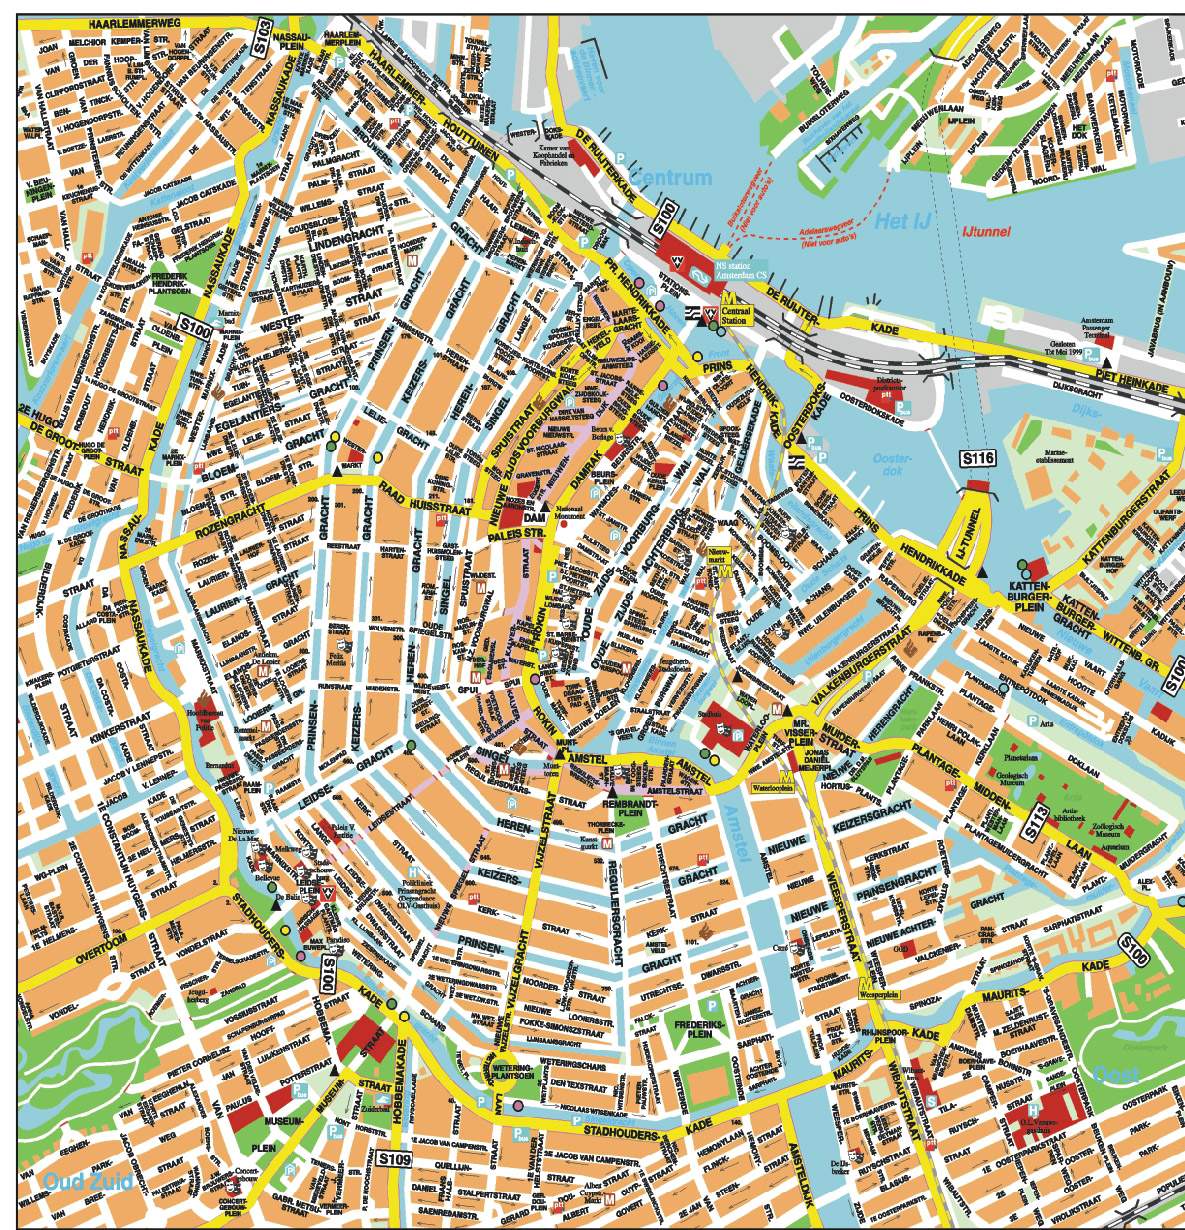 Stadtplan von Amsterdam | Detaillierte gedruckte Karten von Amsterdam